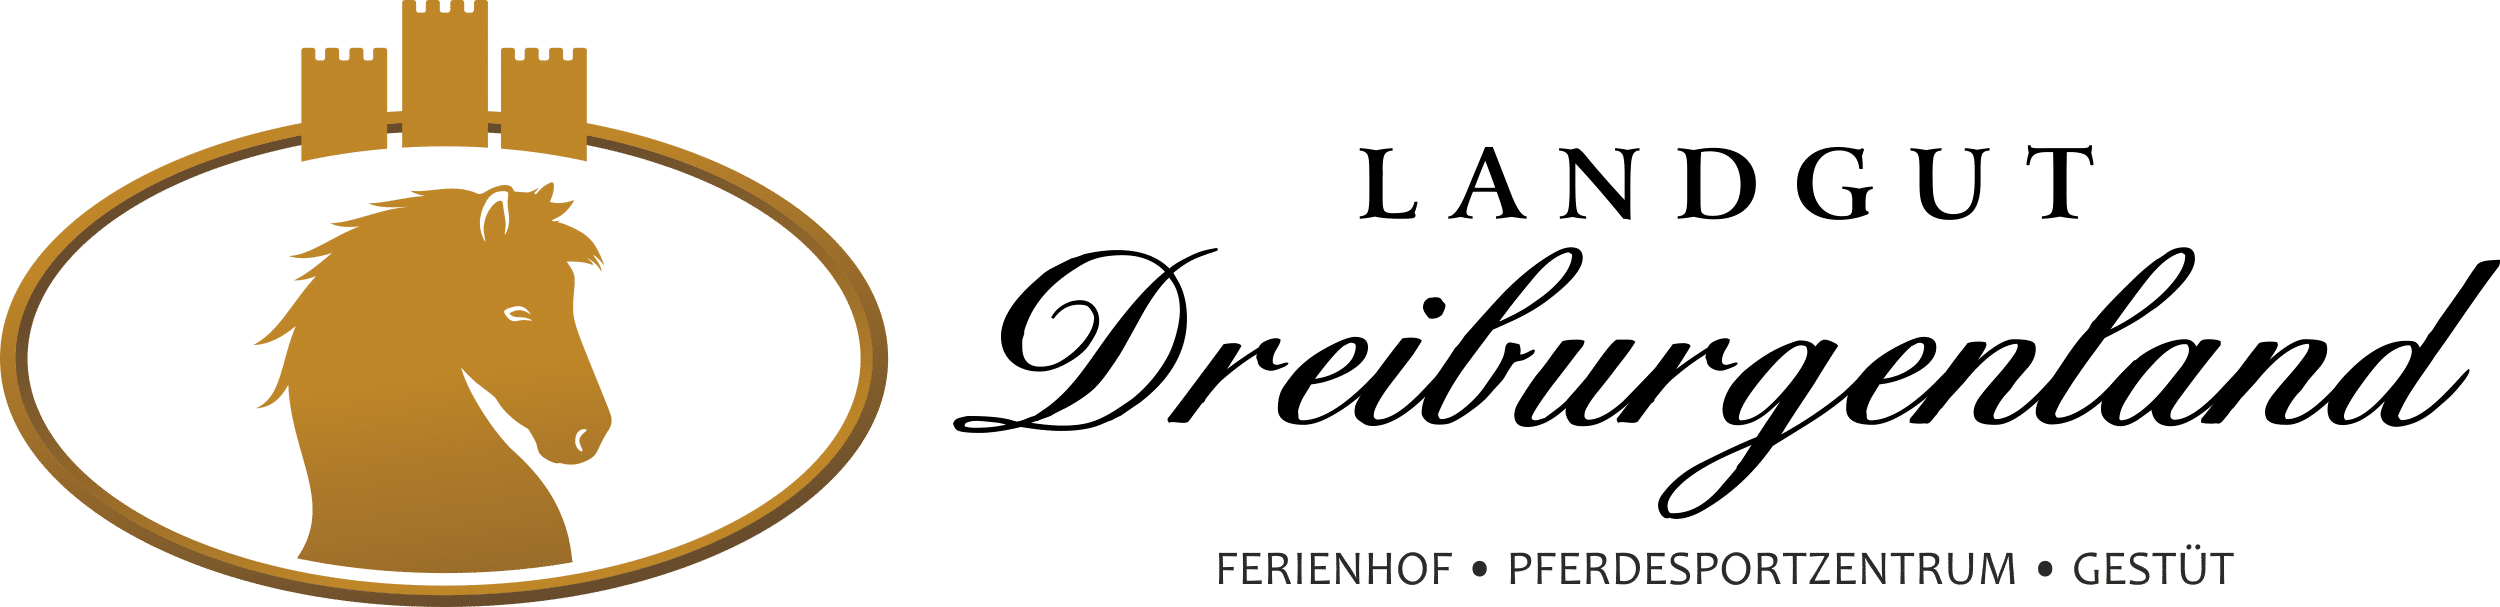 Landgut Dreiburgenland | Reiturlaub für Erwachsene - Landgut-Dreiburgenland